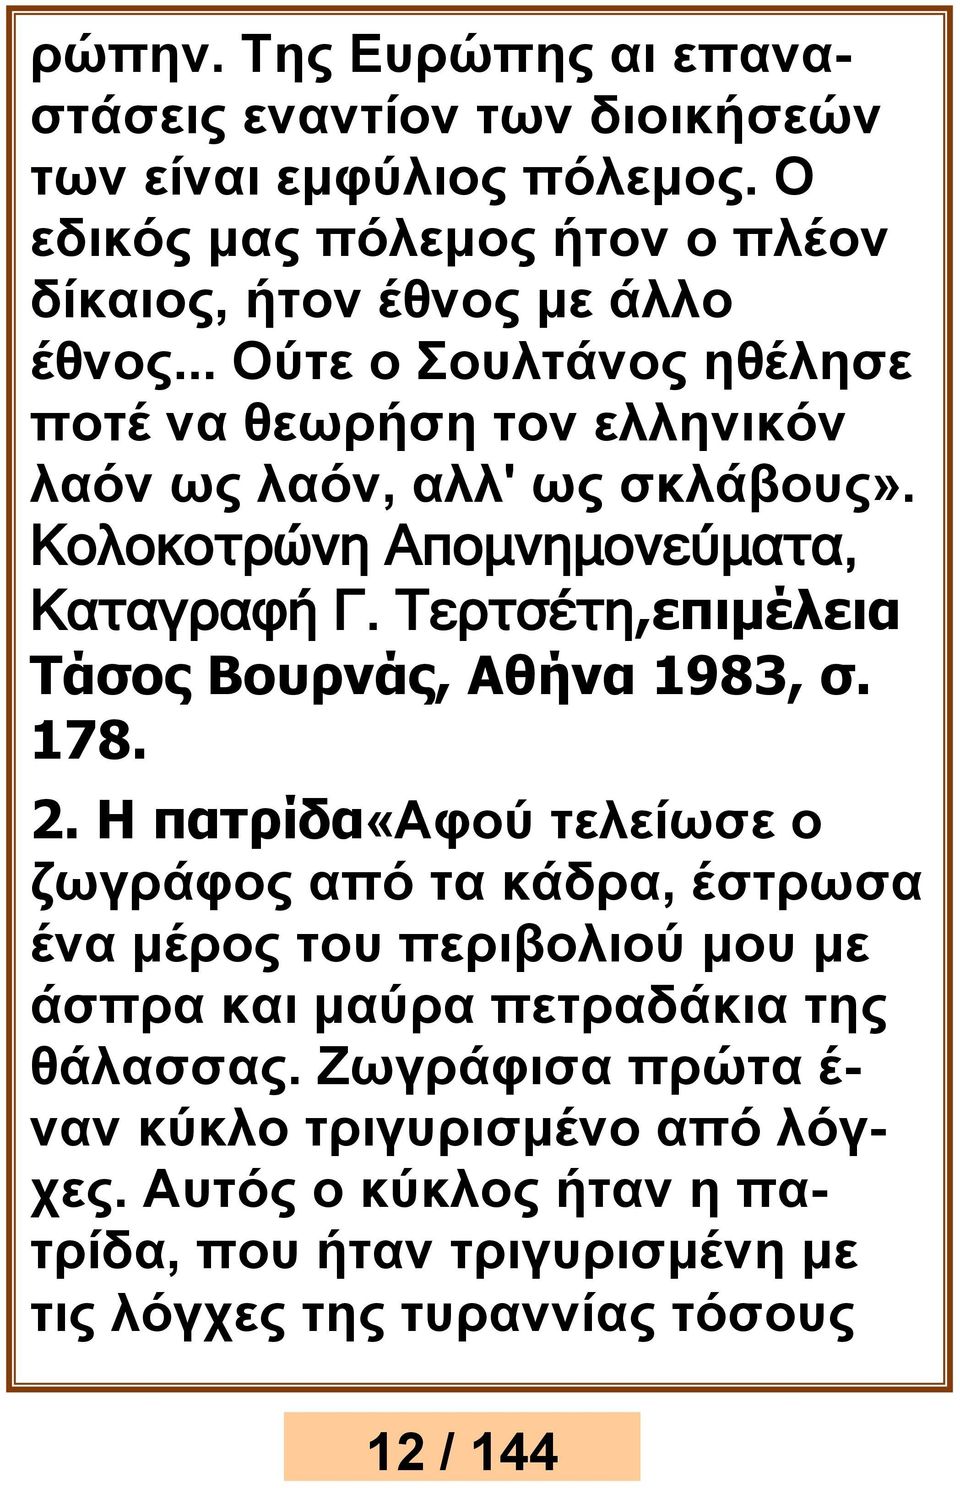 Τερτσέτη,επιμέλεια Τάσος Βουρνάς, Αθήνα 1983, σ. 178. 2.